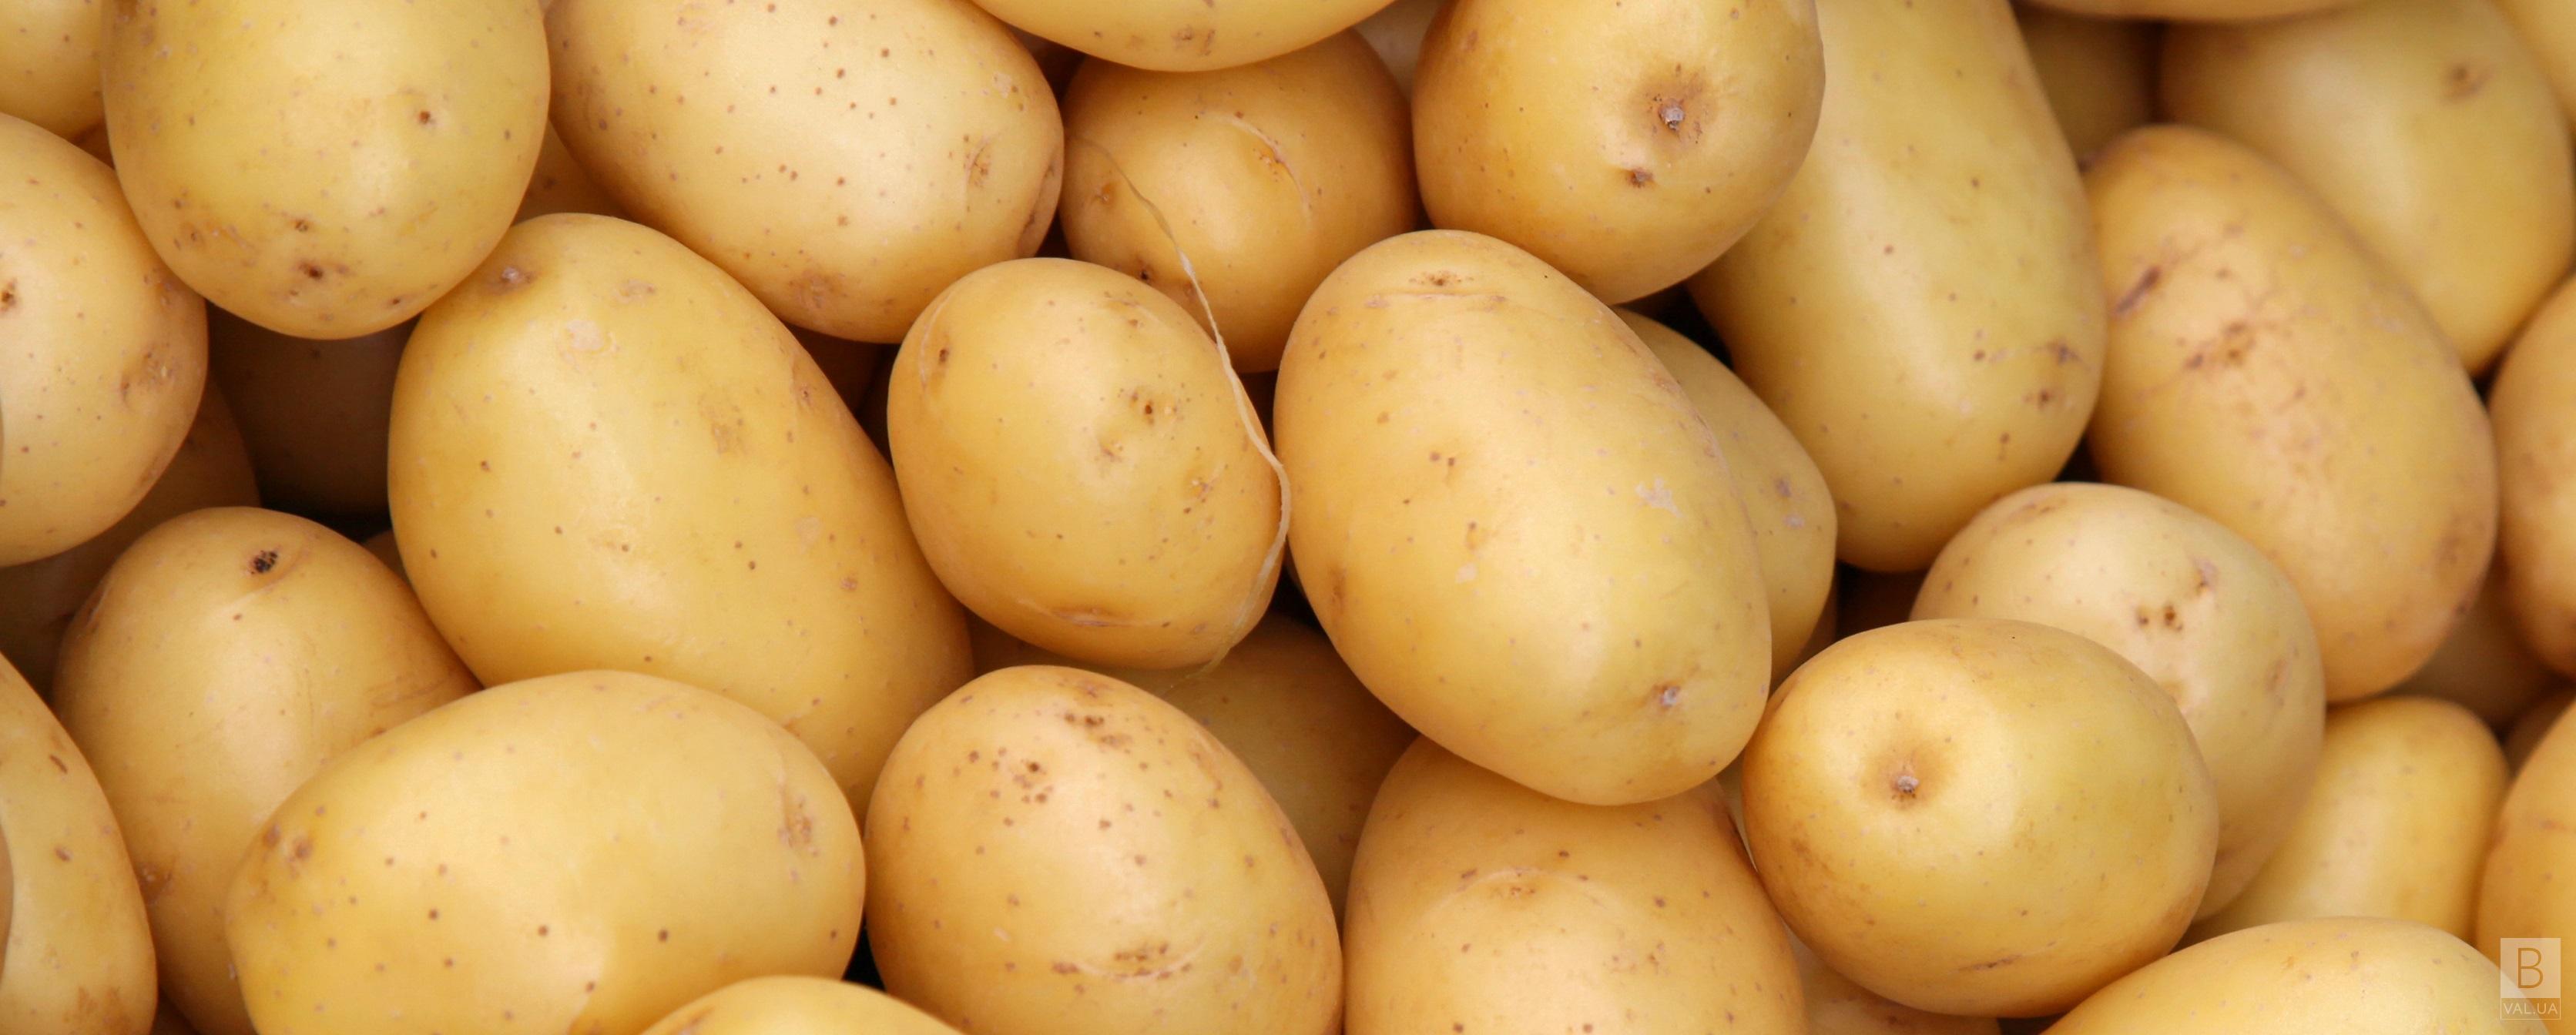 Картофель в садики Чернигова управление купило почти по 10 гривен за килограмм 